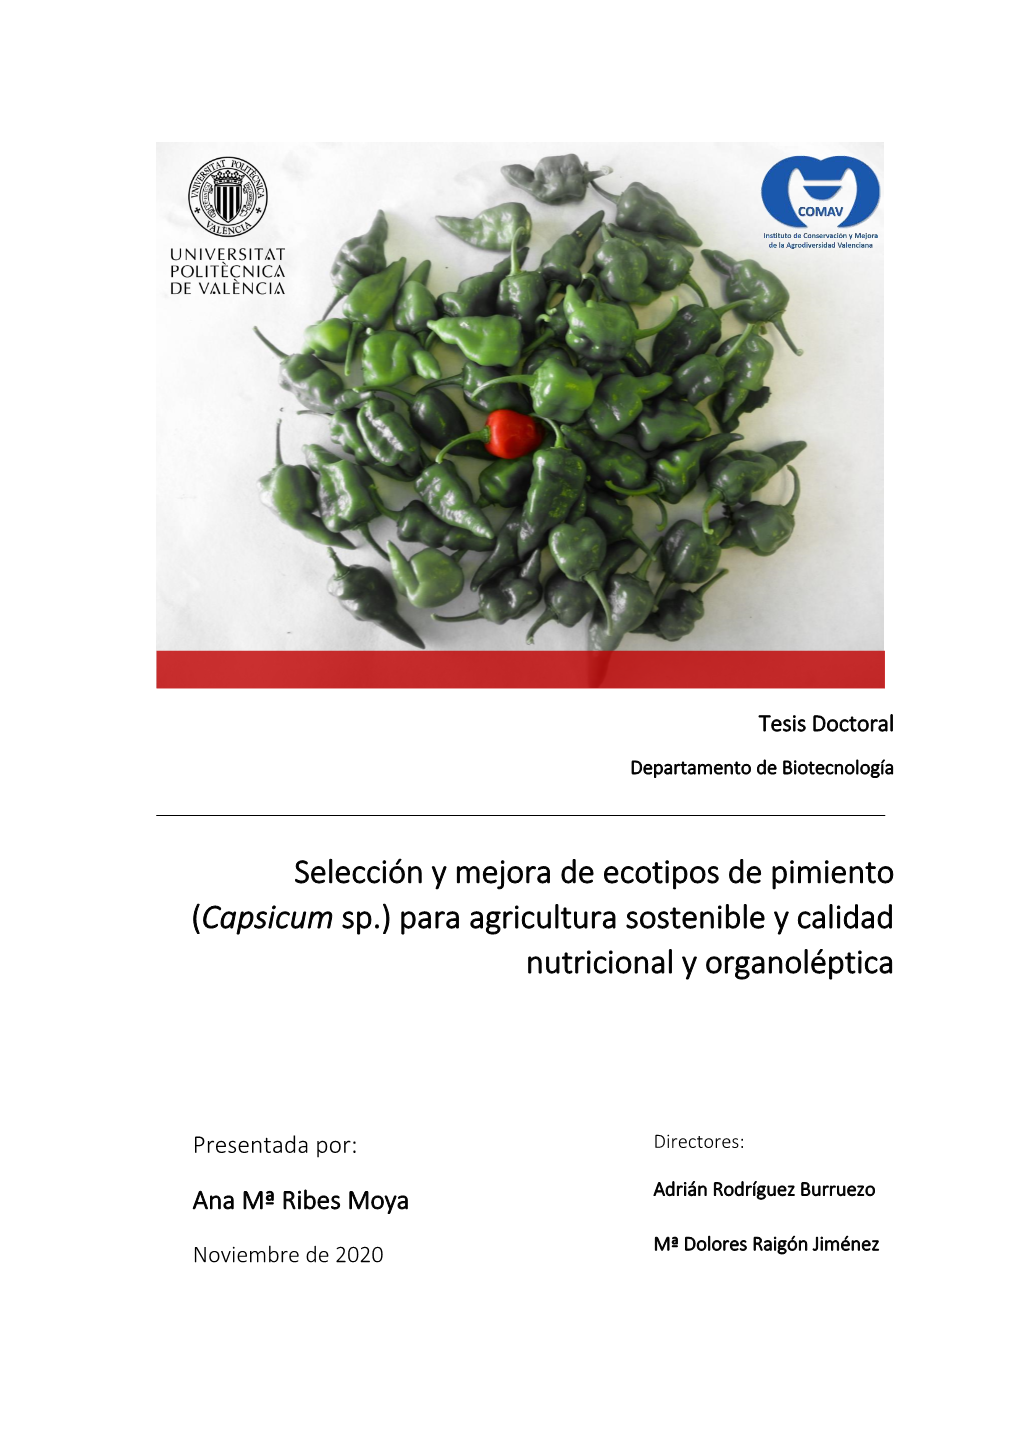 Selección Y Mejora De Ecotipos De Pimiento (Capsicum Sp.) Para Agricultura Sostenible Y Calidad Nutricional Y Organoléptica